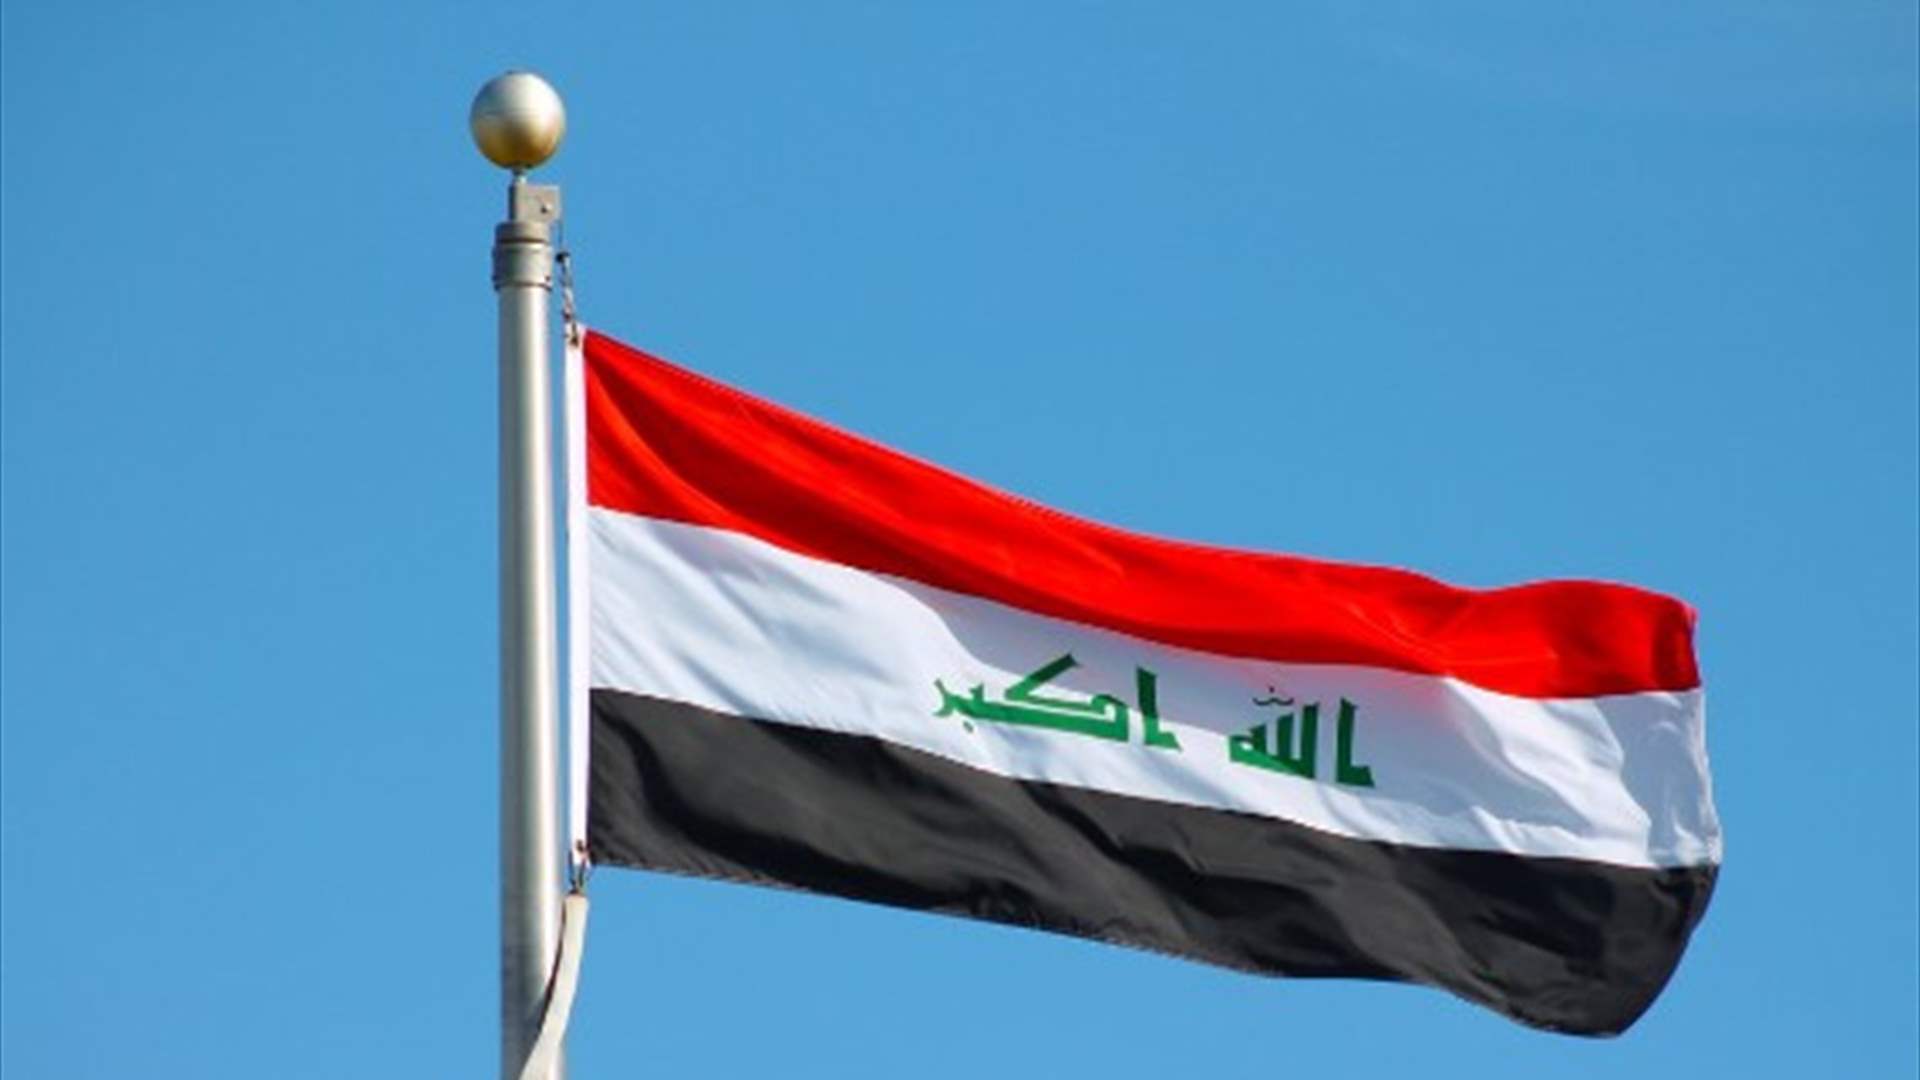 العراق يستنكر التصعید المستمرّ: مستعدون للعمل على رسم قواعد تجنّب المنطقة المزيد من التداعيات